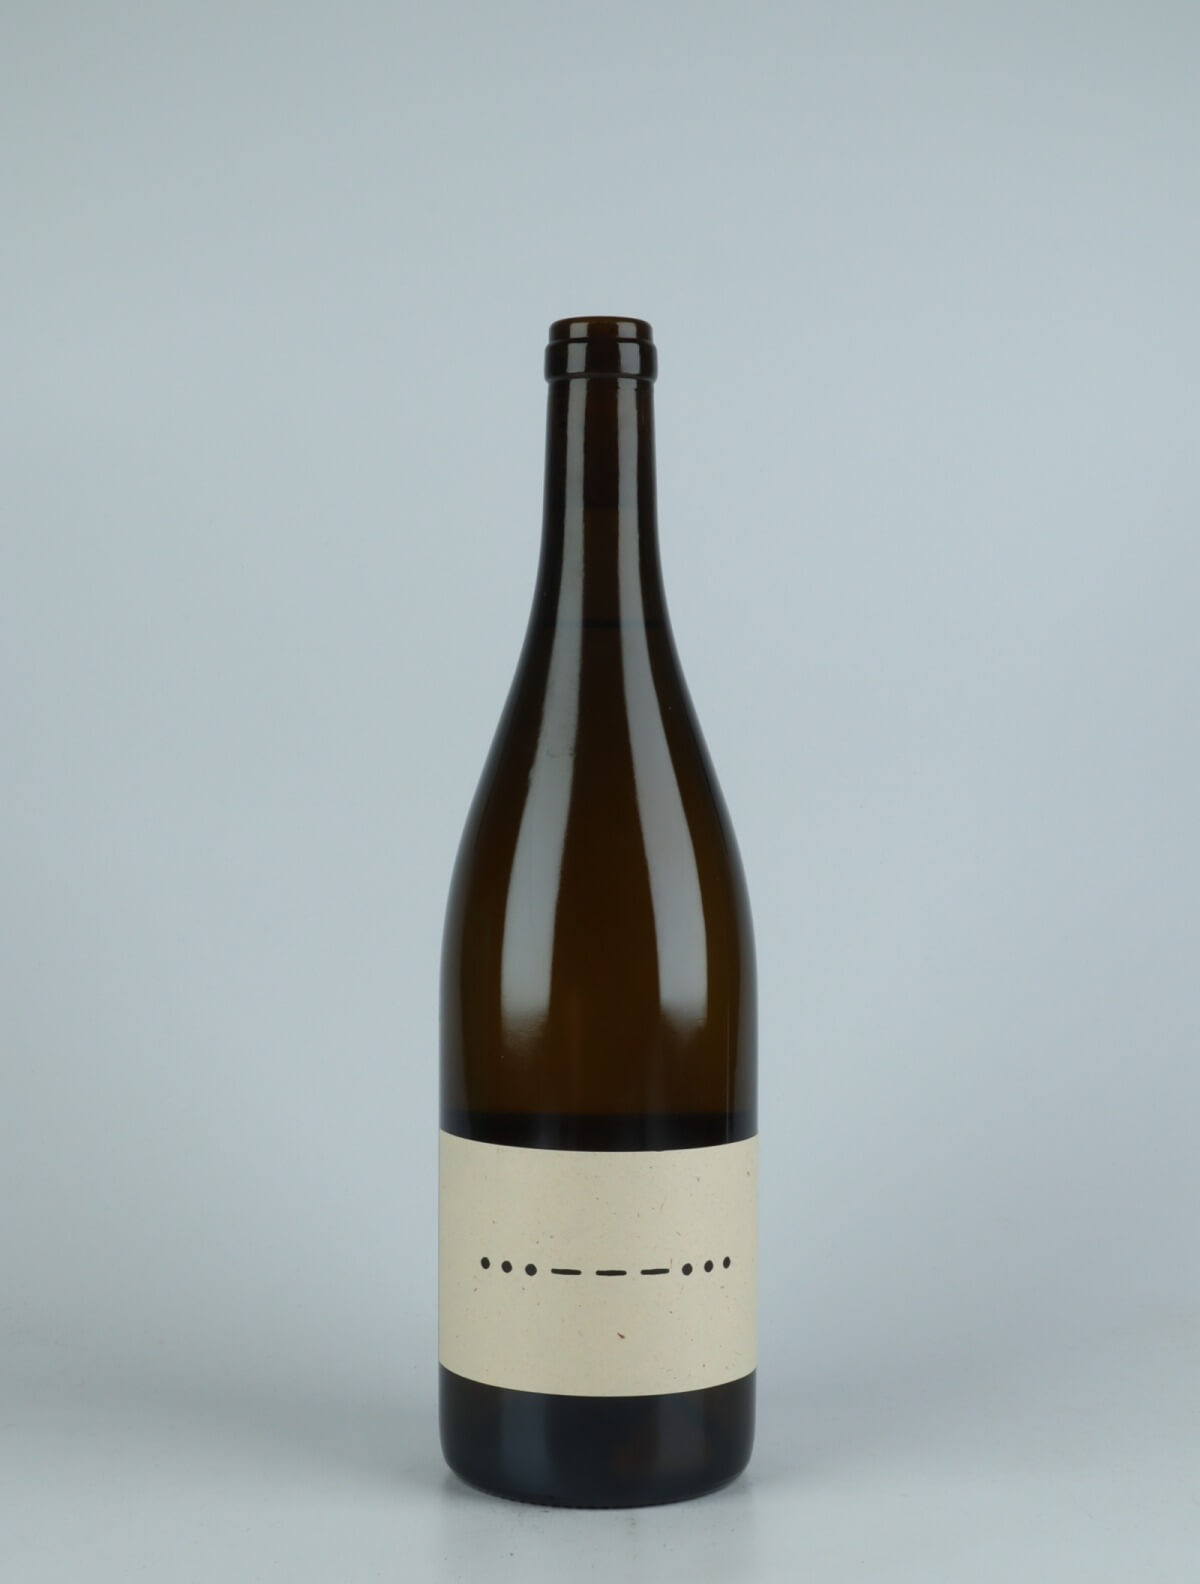 En flaske 2020 S.O.S Weiss Hvidvin fra Konni & Evi, Saale-Unstrut i Tyskland